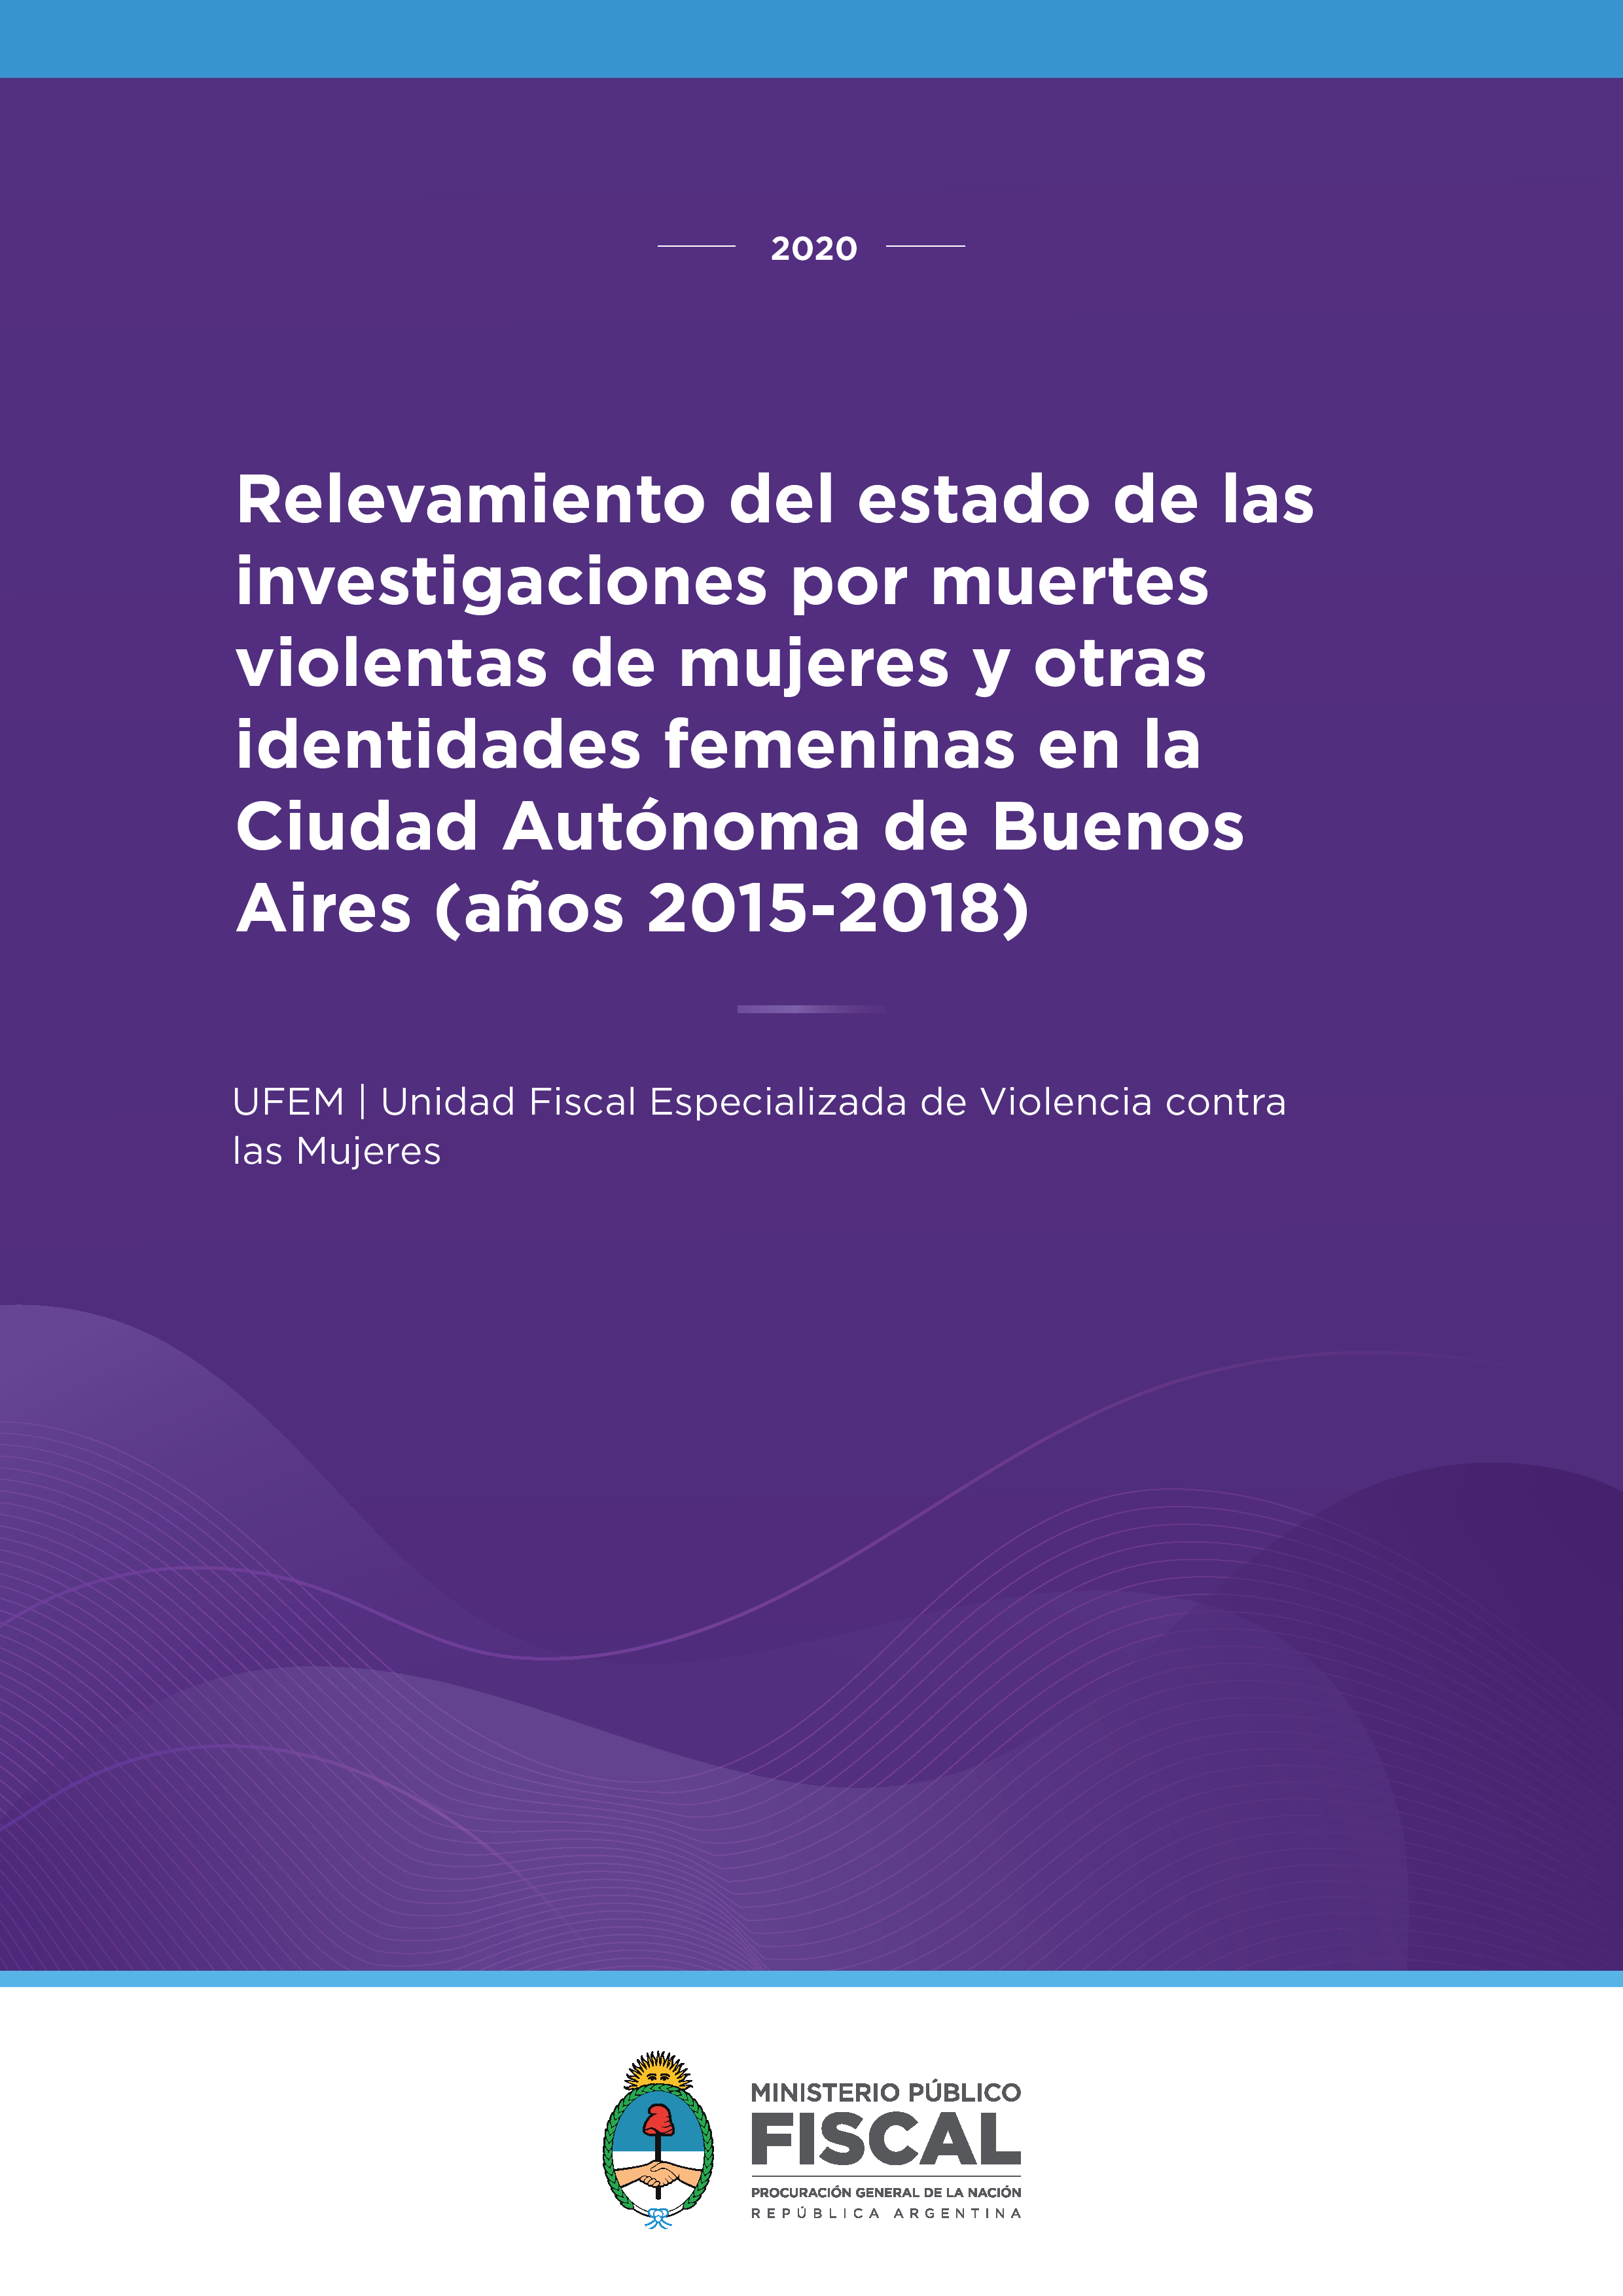 Relevamiento del estado de las investigaciones por muertes violentas de mujeres y otras identidades femeninas en CABA (2015-2018)